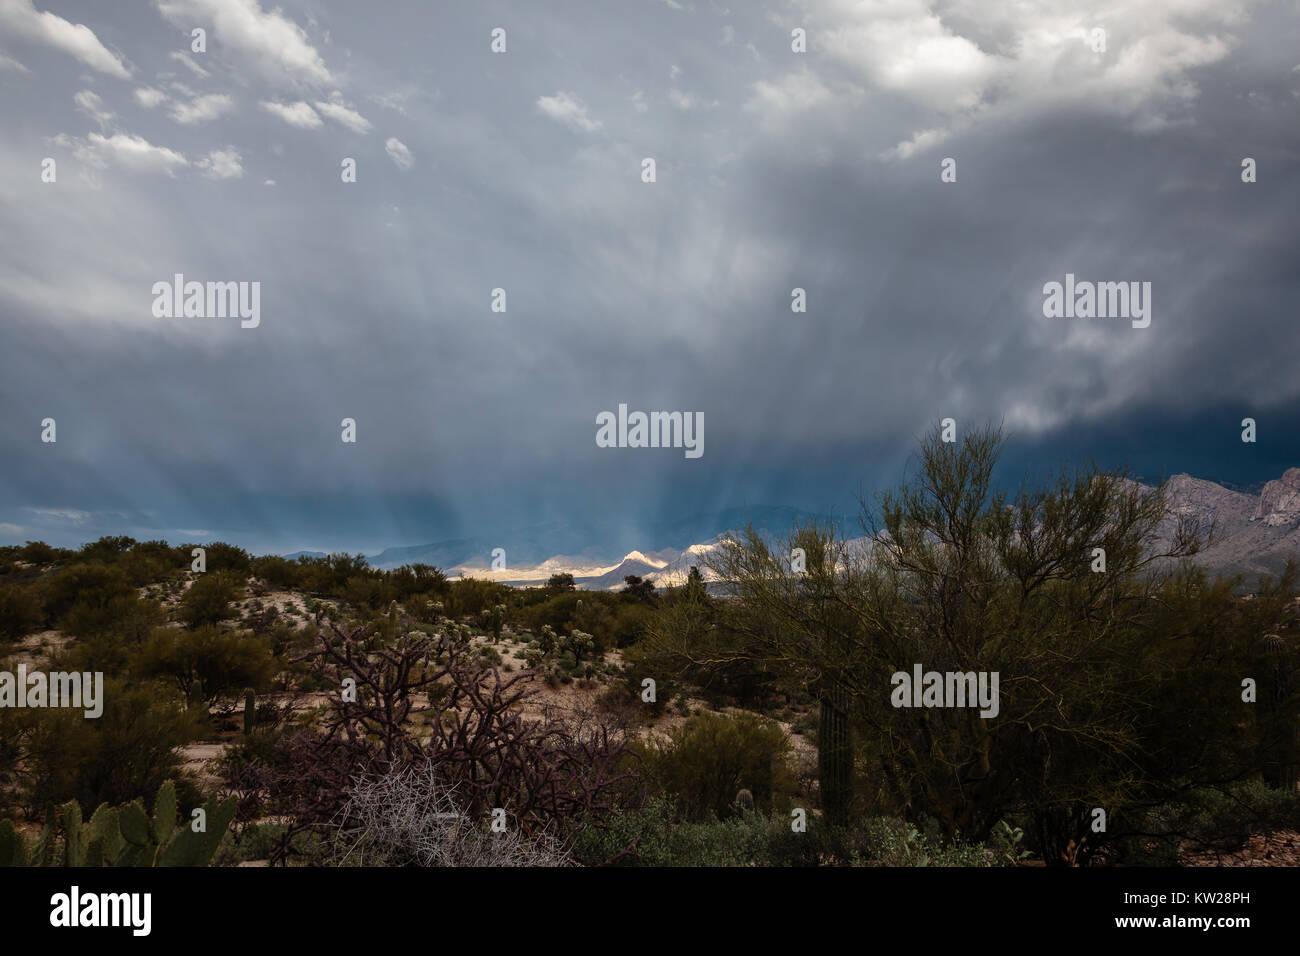 Raggi di luce solare che filtra attraverso le nubi invernali e illuminare le colline ai piedi delle montagne Santa Catalina vicino a Tucson, Arizona. Foto Stock